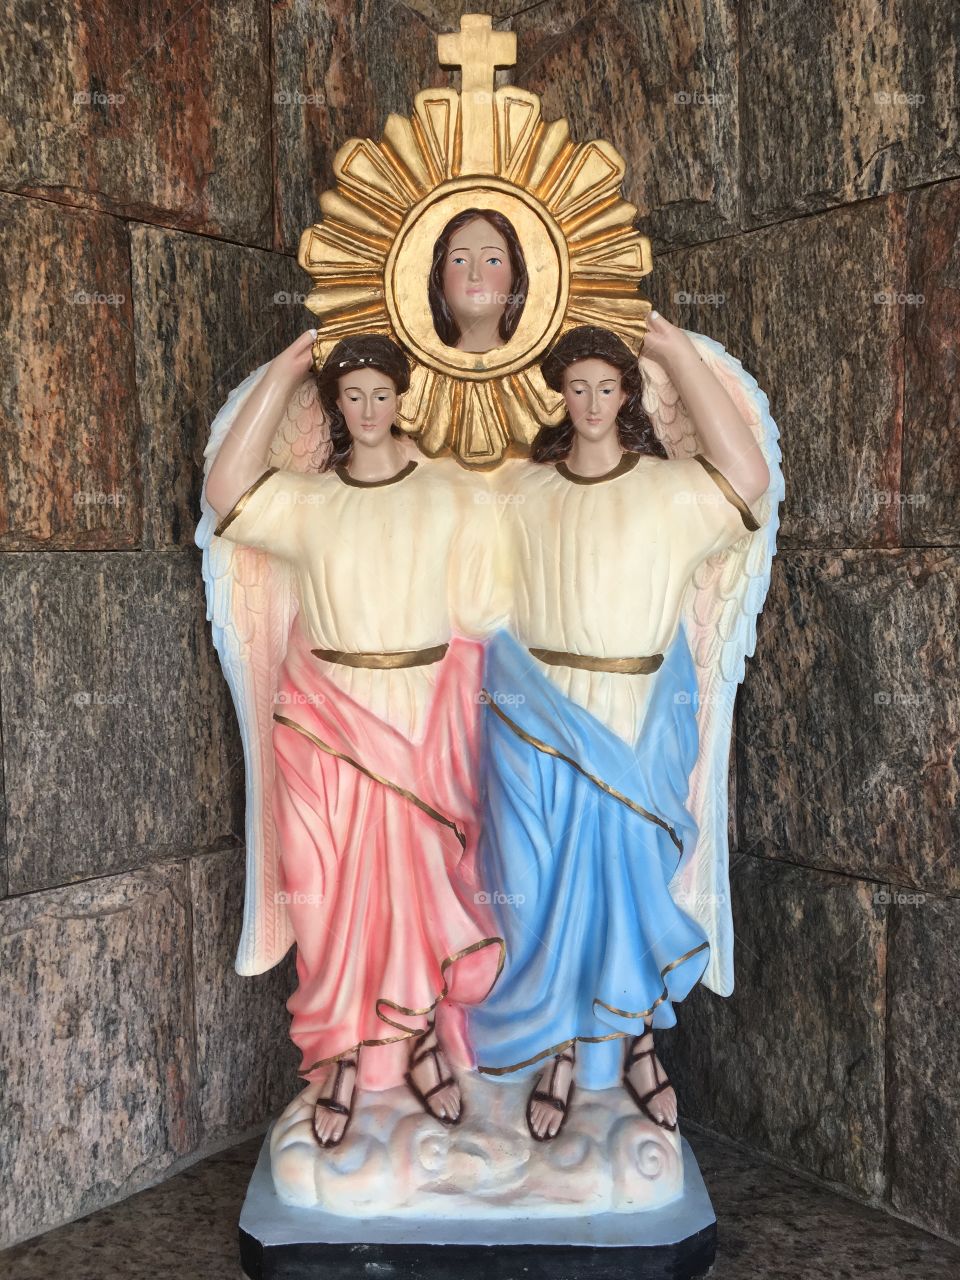 Os santos anjos adornando a imagem da Virgem Maria. Aqui, Santuário de Nossa Senhora da Santa Cabea